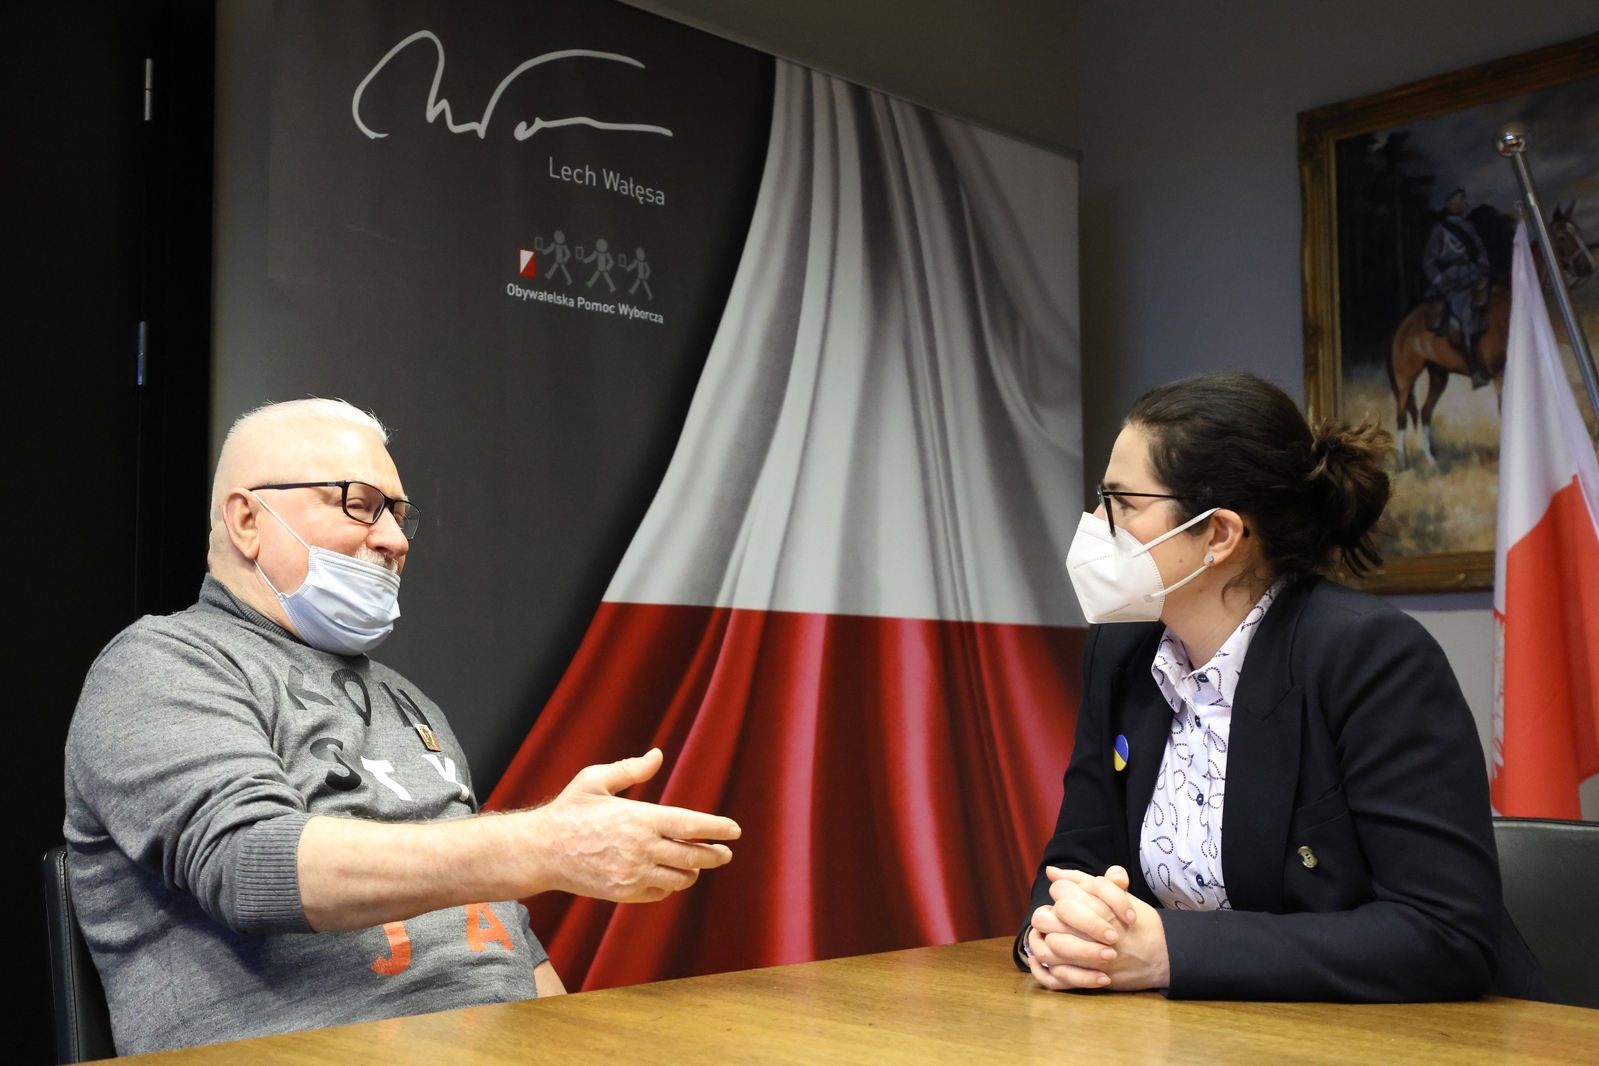 Spotkanie Aleksandry Dulkiewicz z Lechem Wałęsą